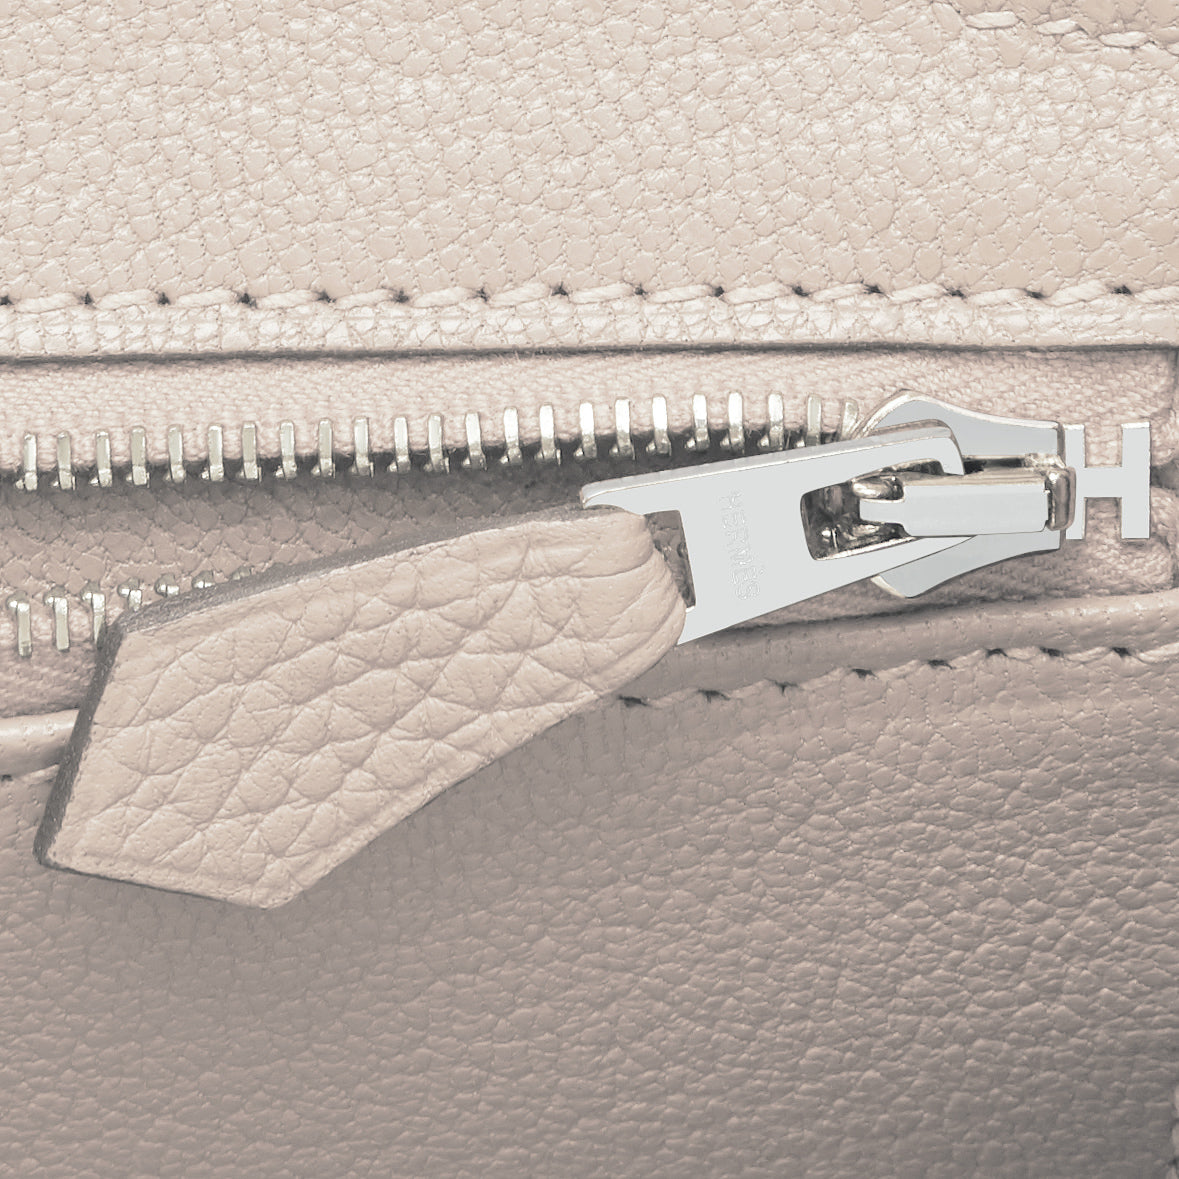 Hermès 30cm Birkin Craie Togo Palladium Hardware – Privé Porter